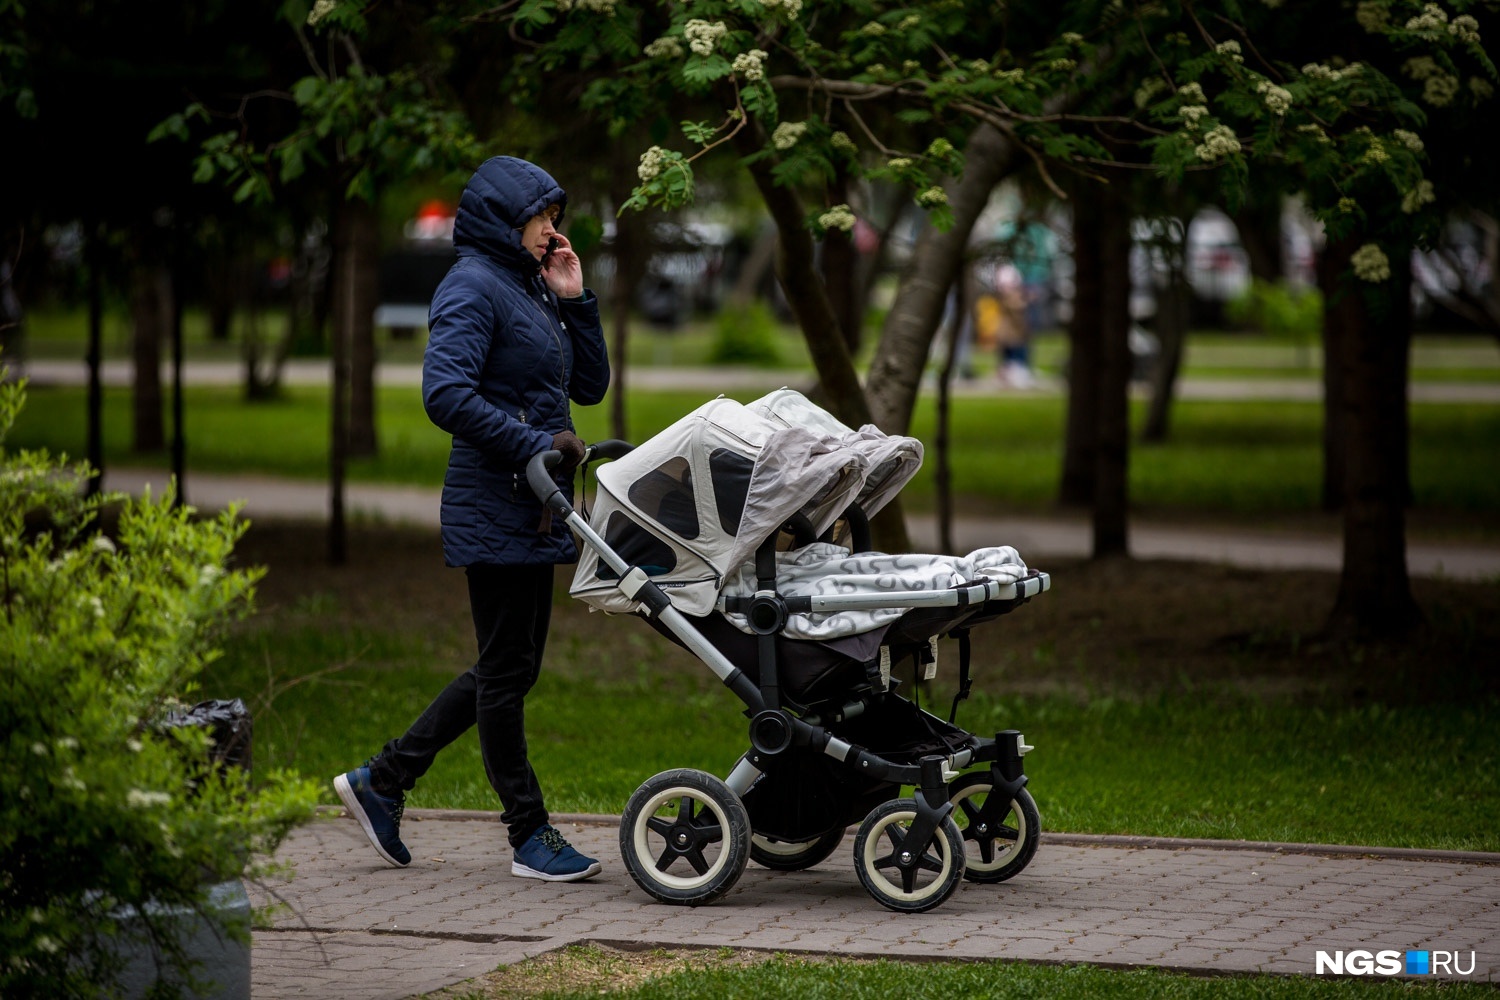 Стареющий город: средний возраст населения Новосибирска приближается к 40 годам